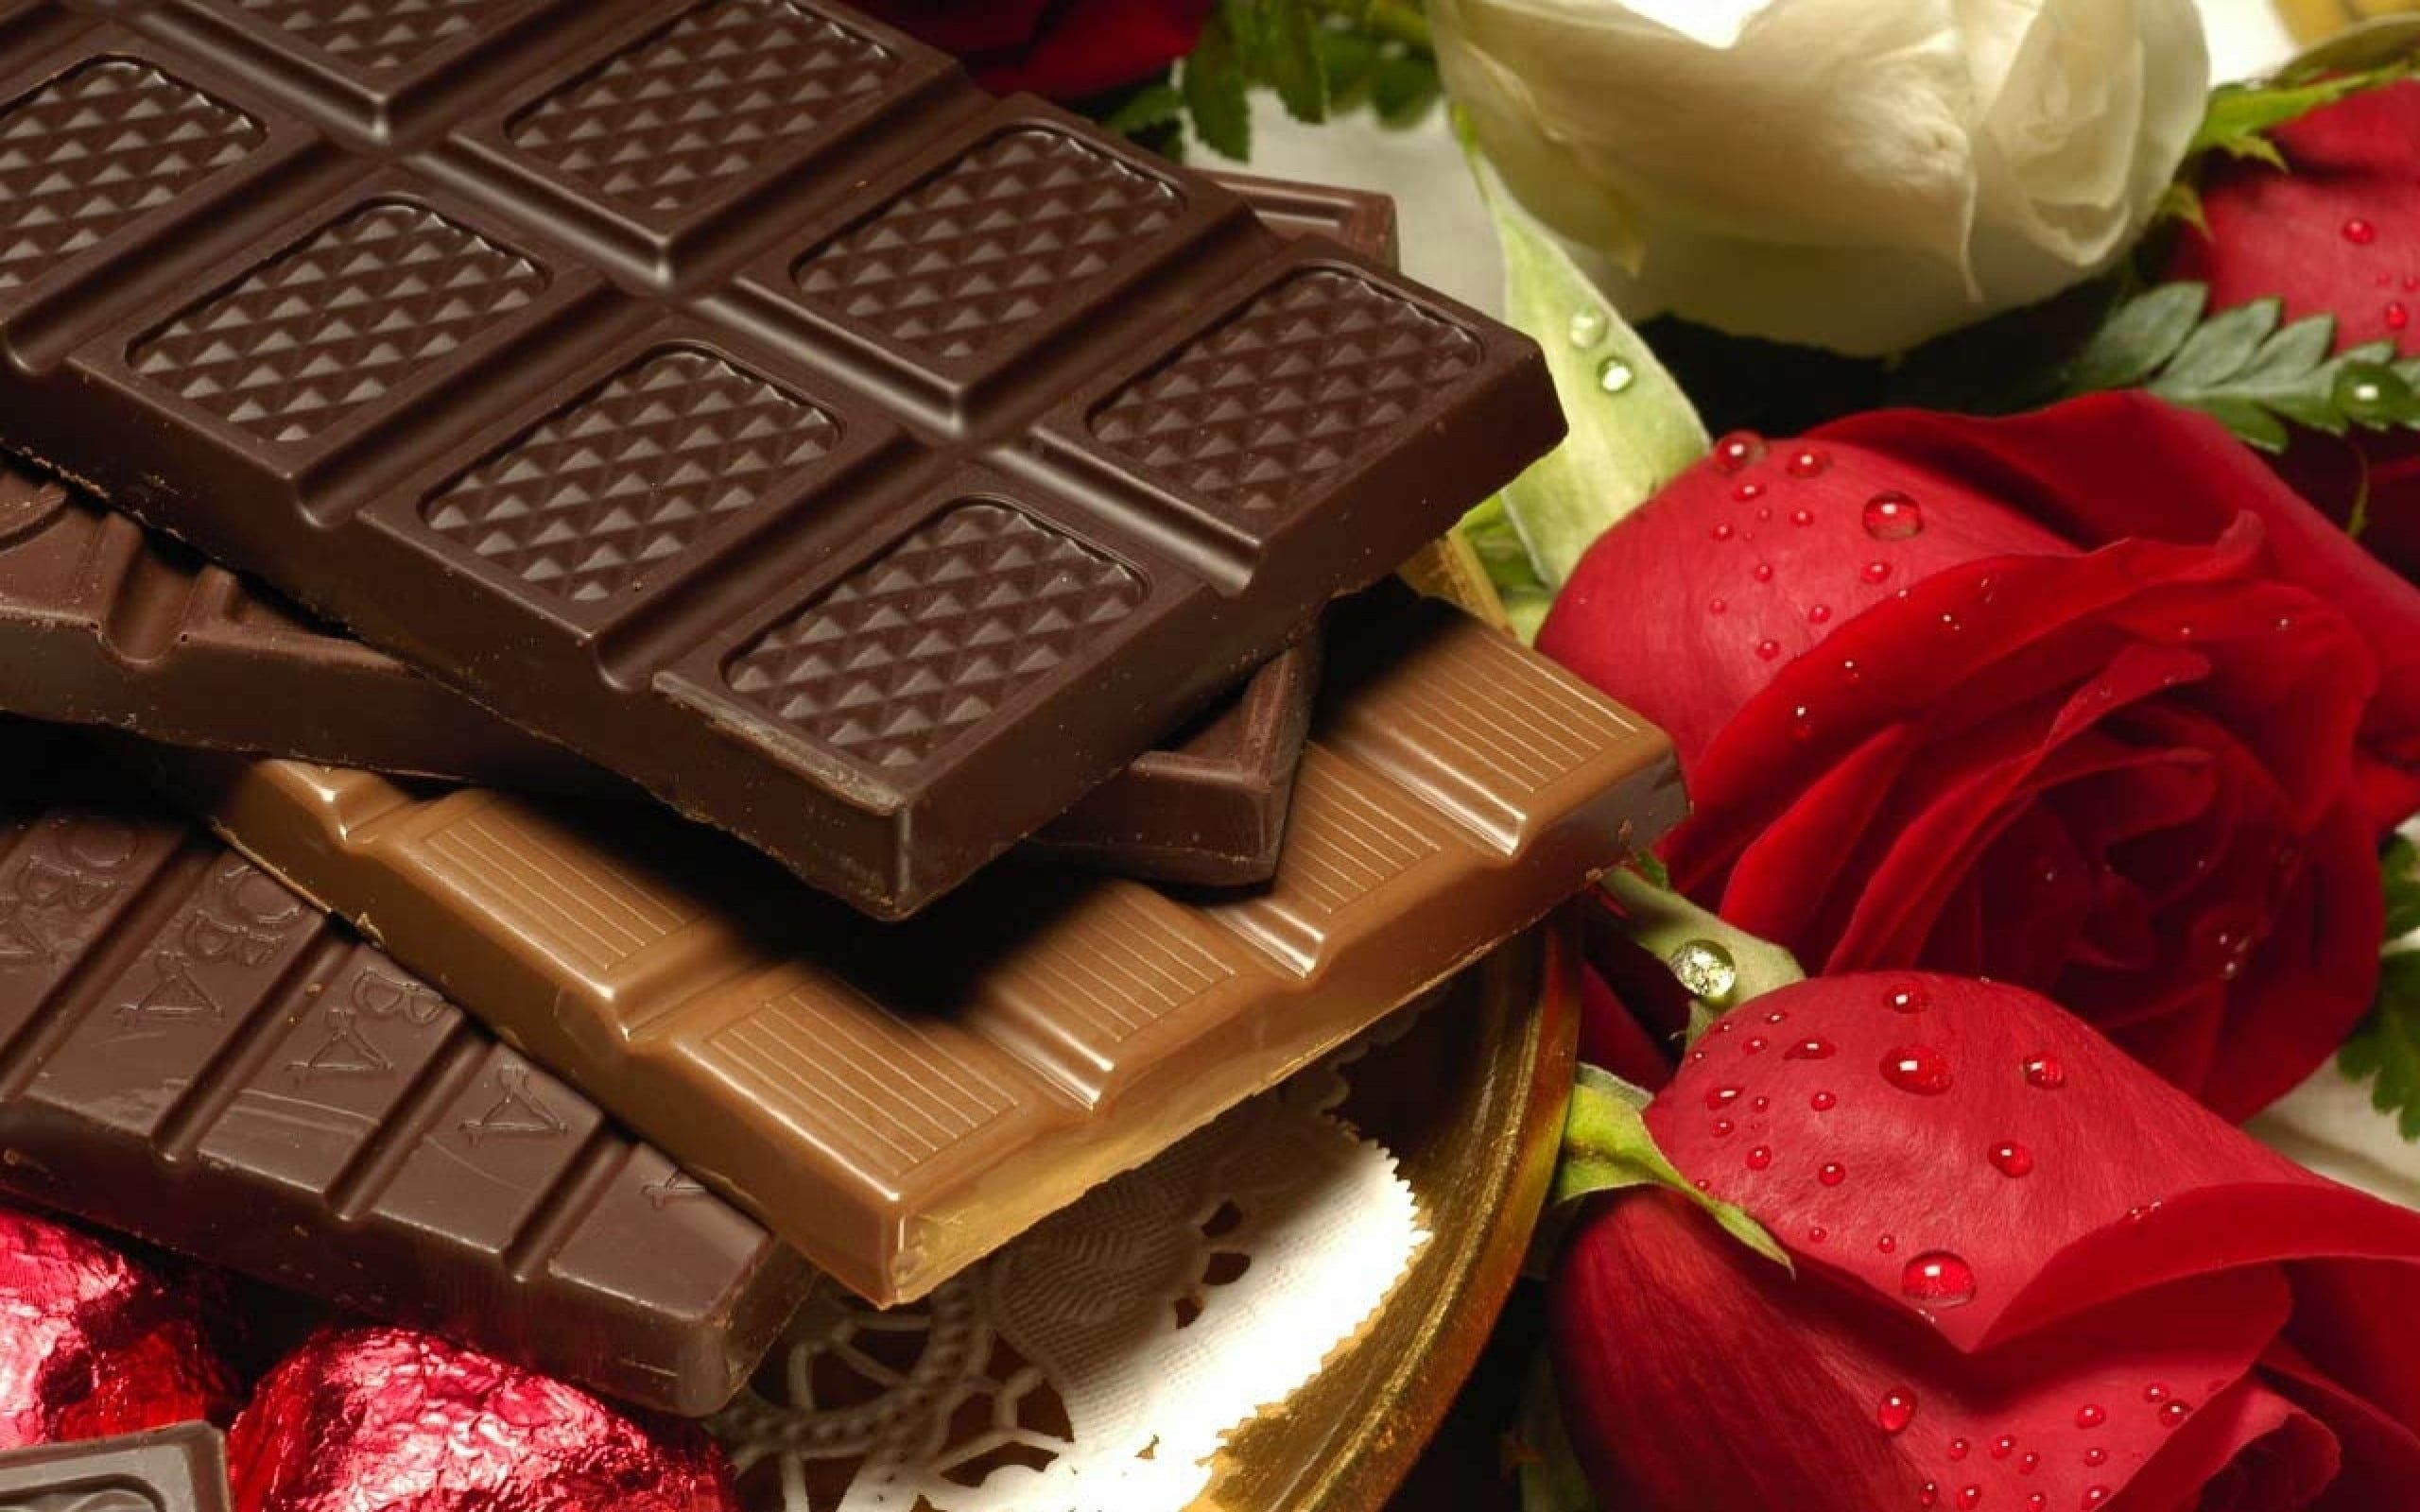 Chocolate pictures. Красивый шоколад. Красивые шоколадки. Шоколадные конфеты и цветы. Плиточный шоколад.